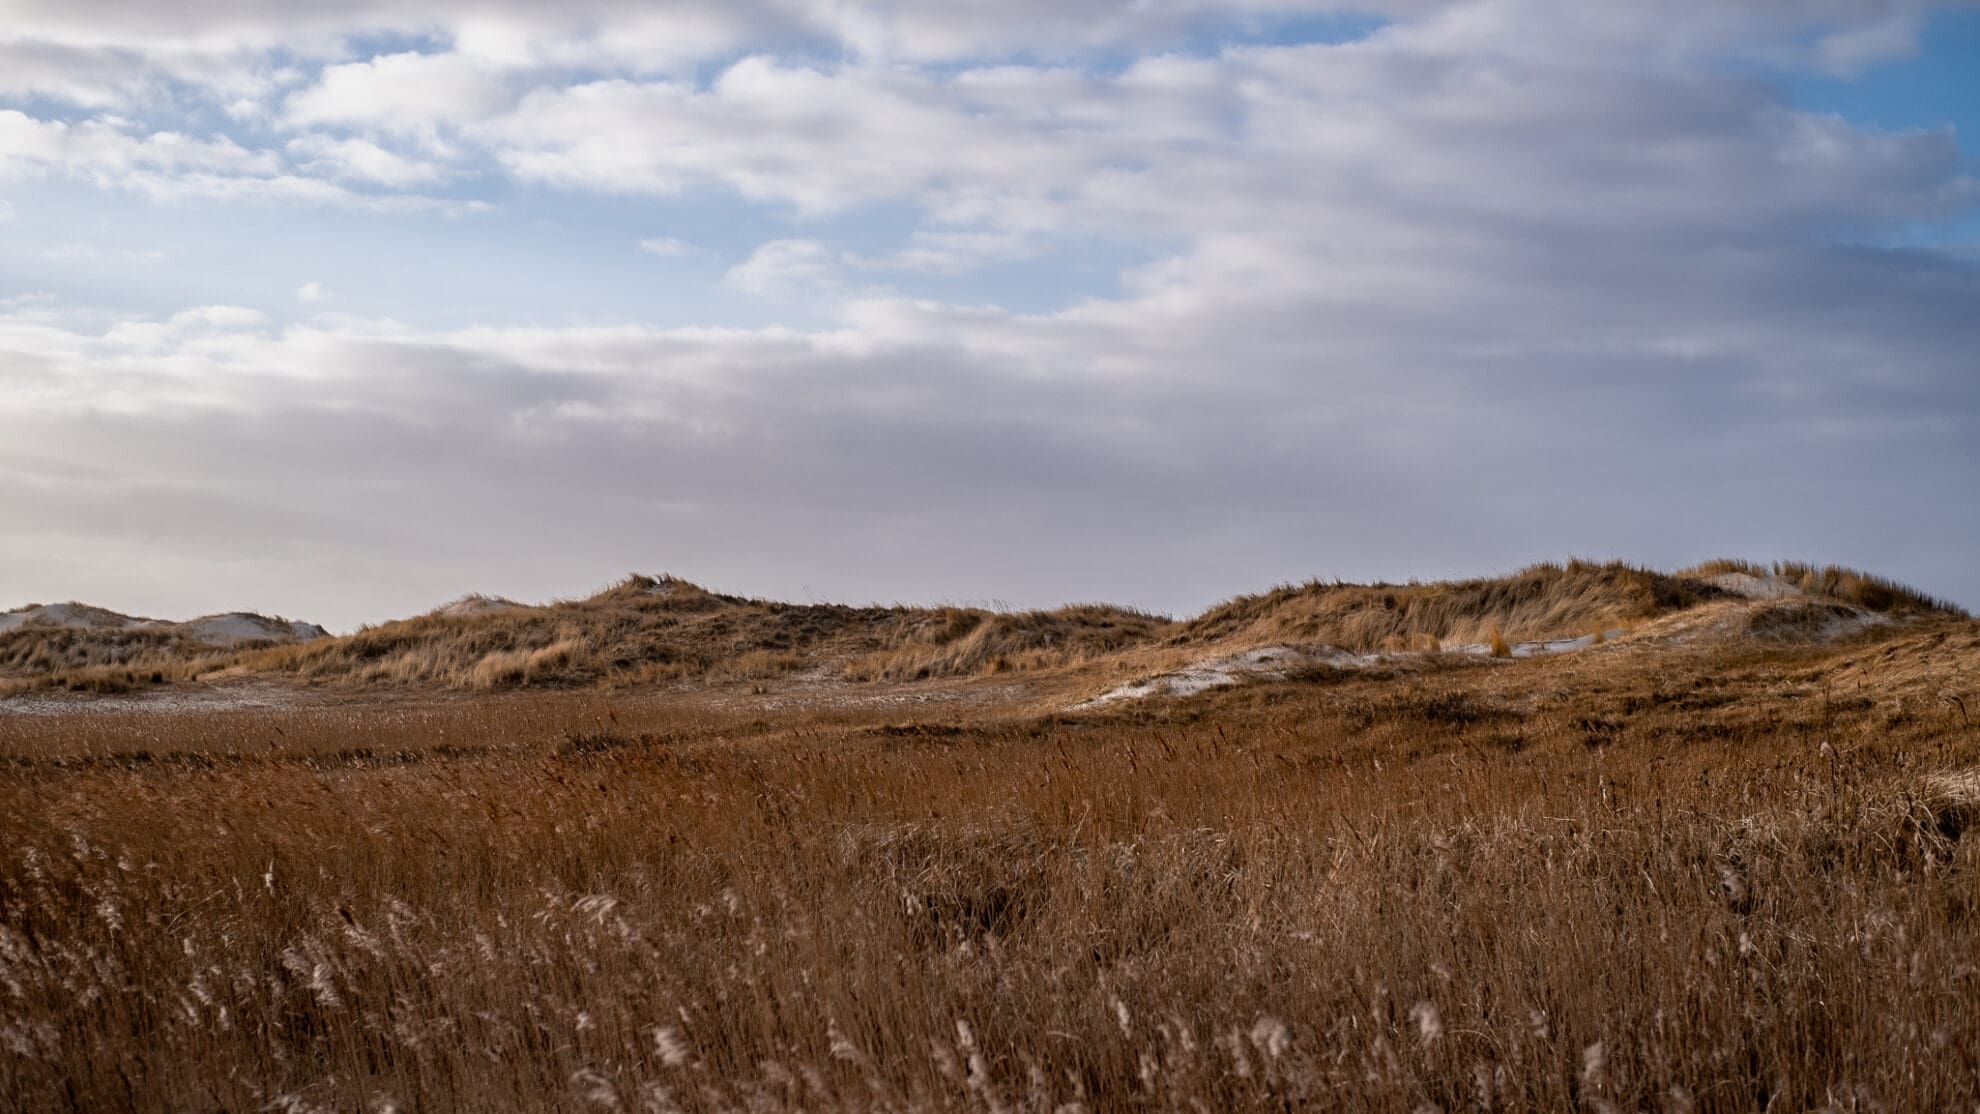 Blick über die braun gefärbte Landschaft hinter den grasbewachsenen Dünen am Meer.